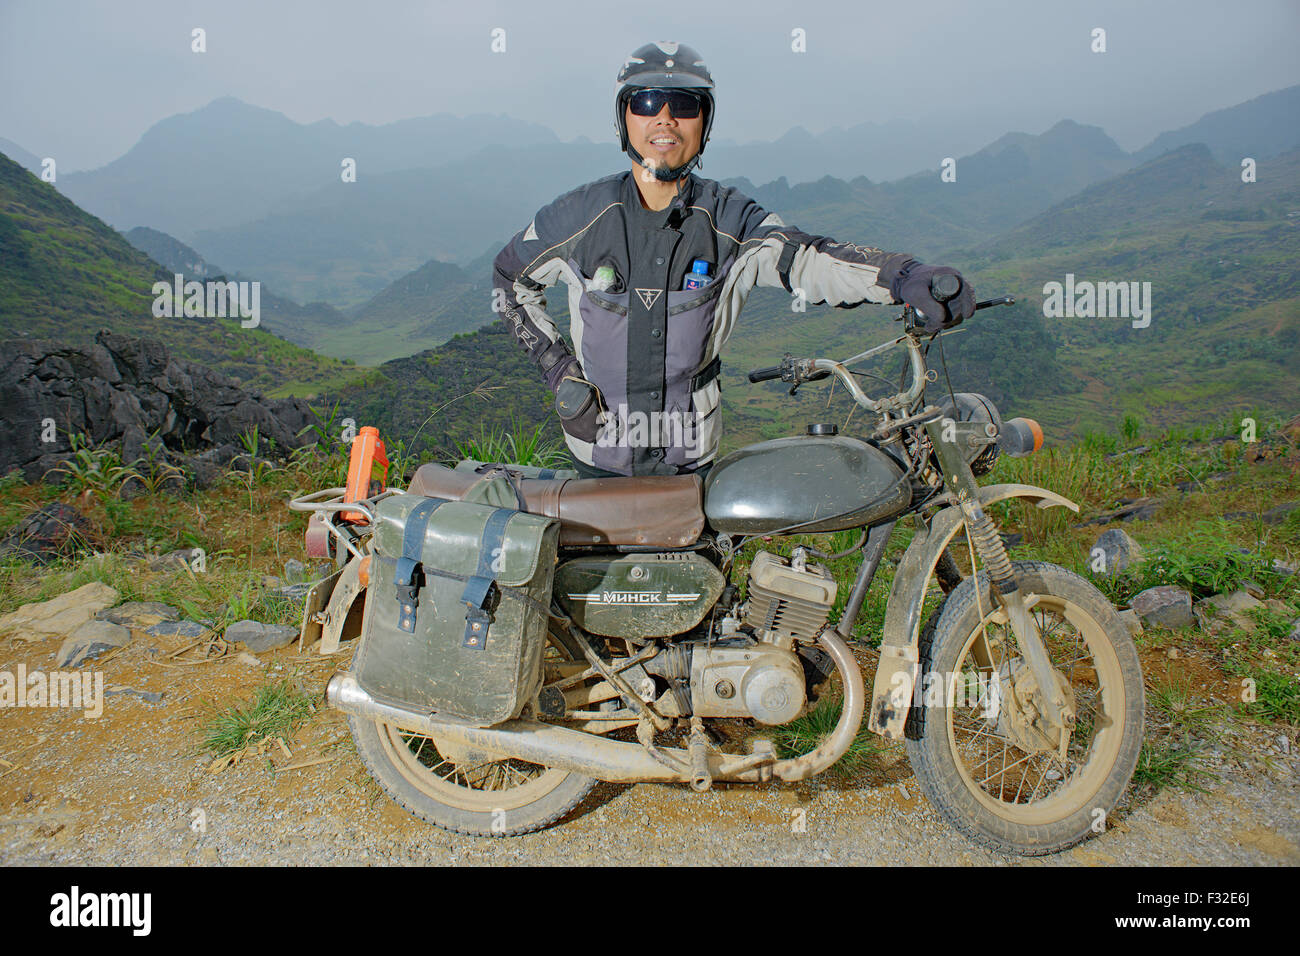 Ursprünglich hergestellt in Belarus, Minsk Motorrad hat einen legendären  Ruf in Nordvietnam Stockfotografie - Alamy